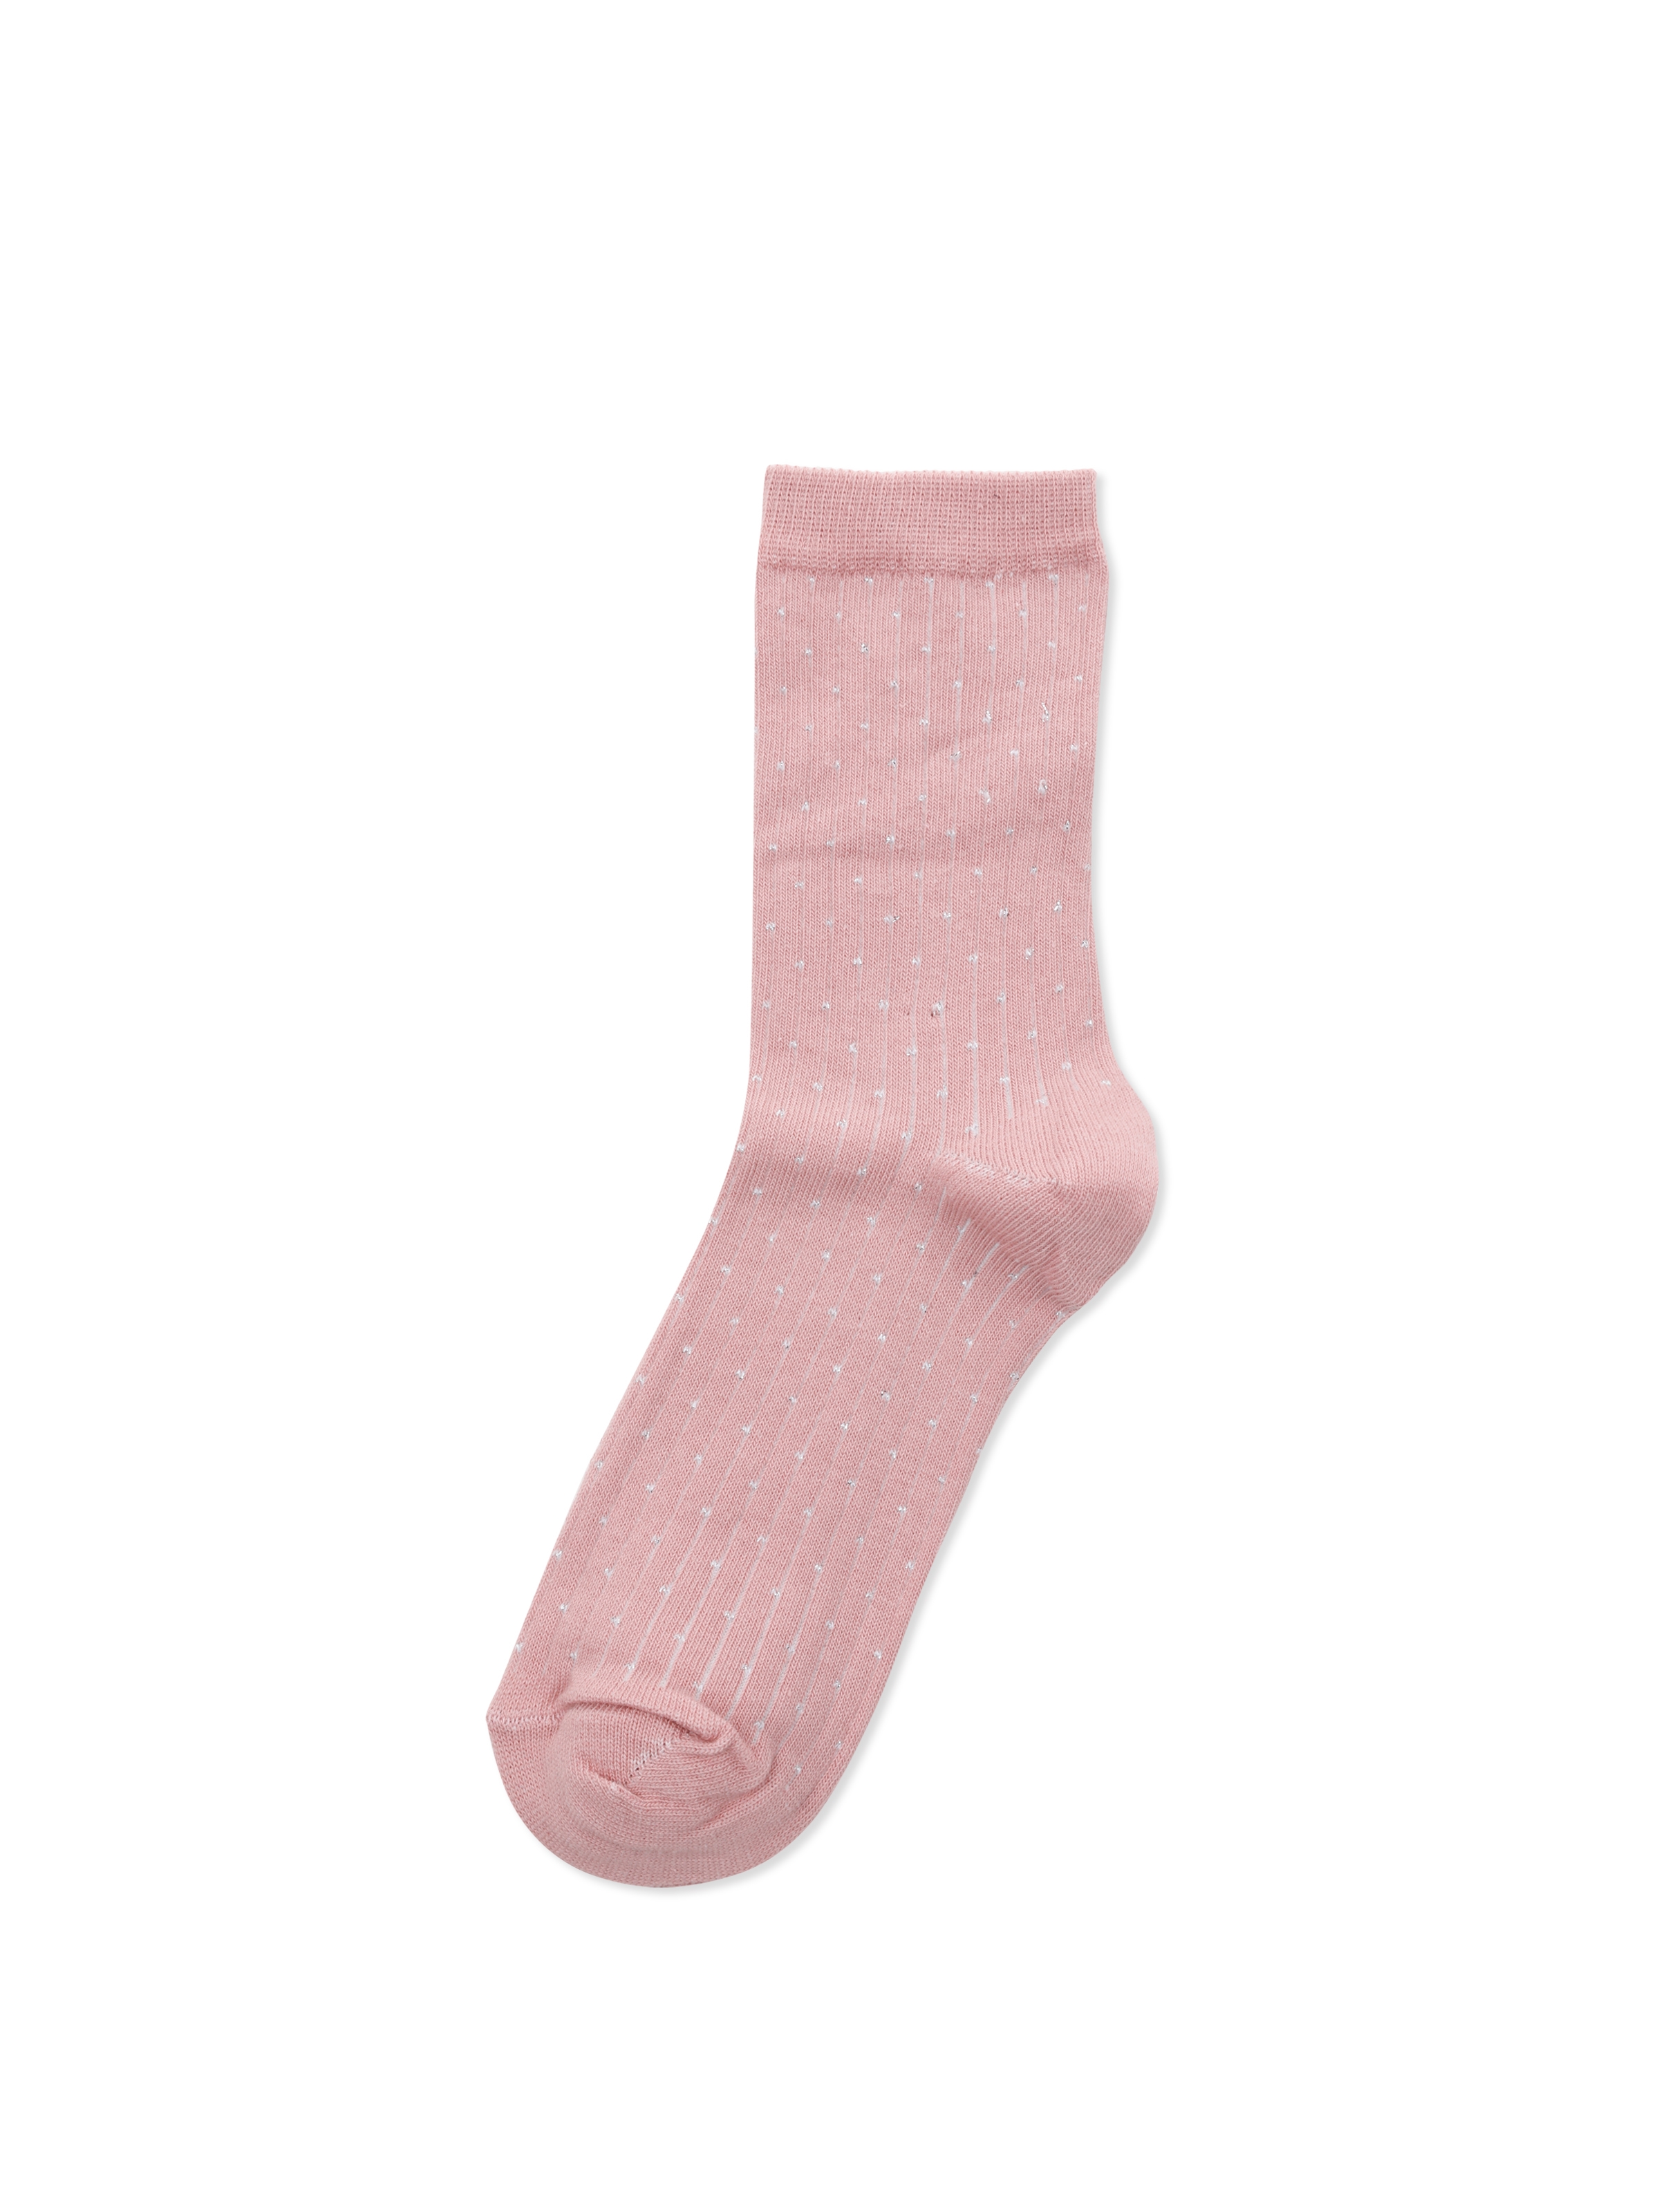 Baskılı Pembe Kadın Çorap Cl1065507